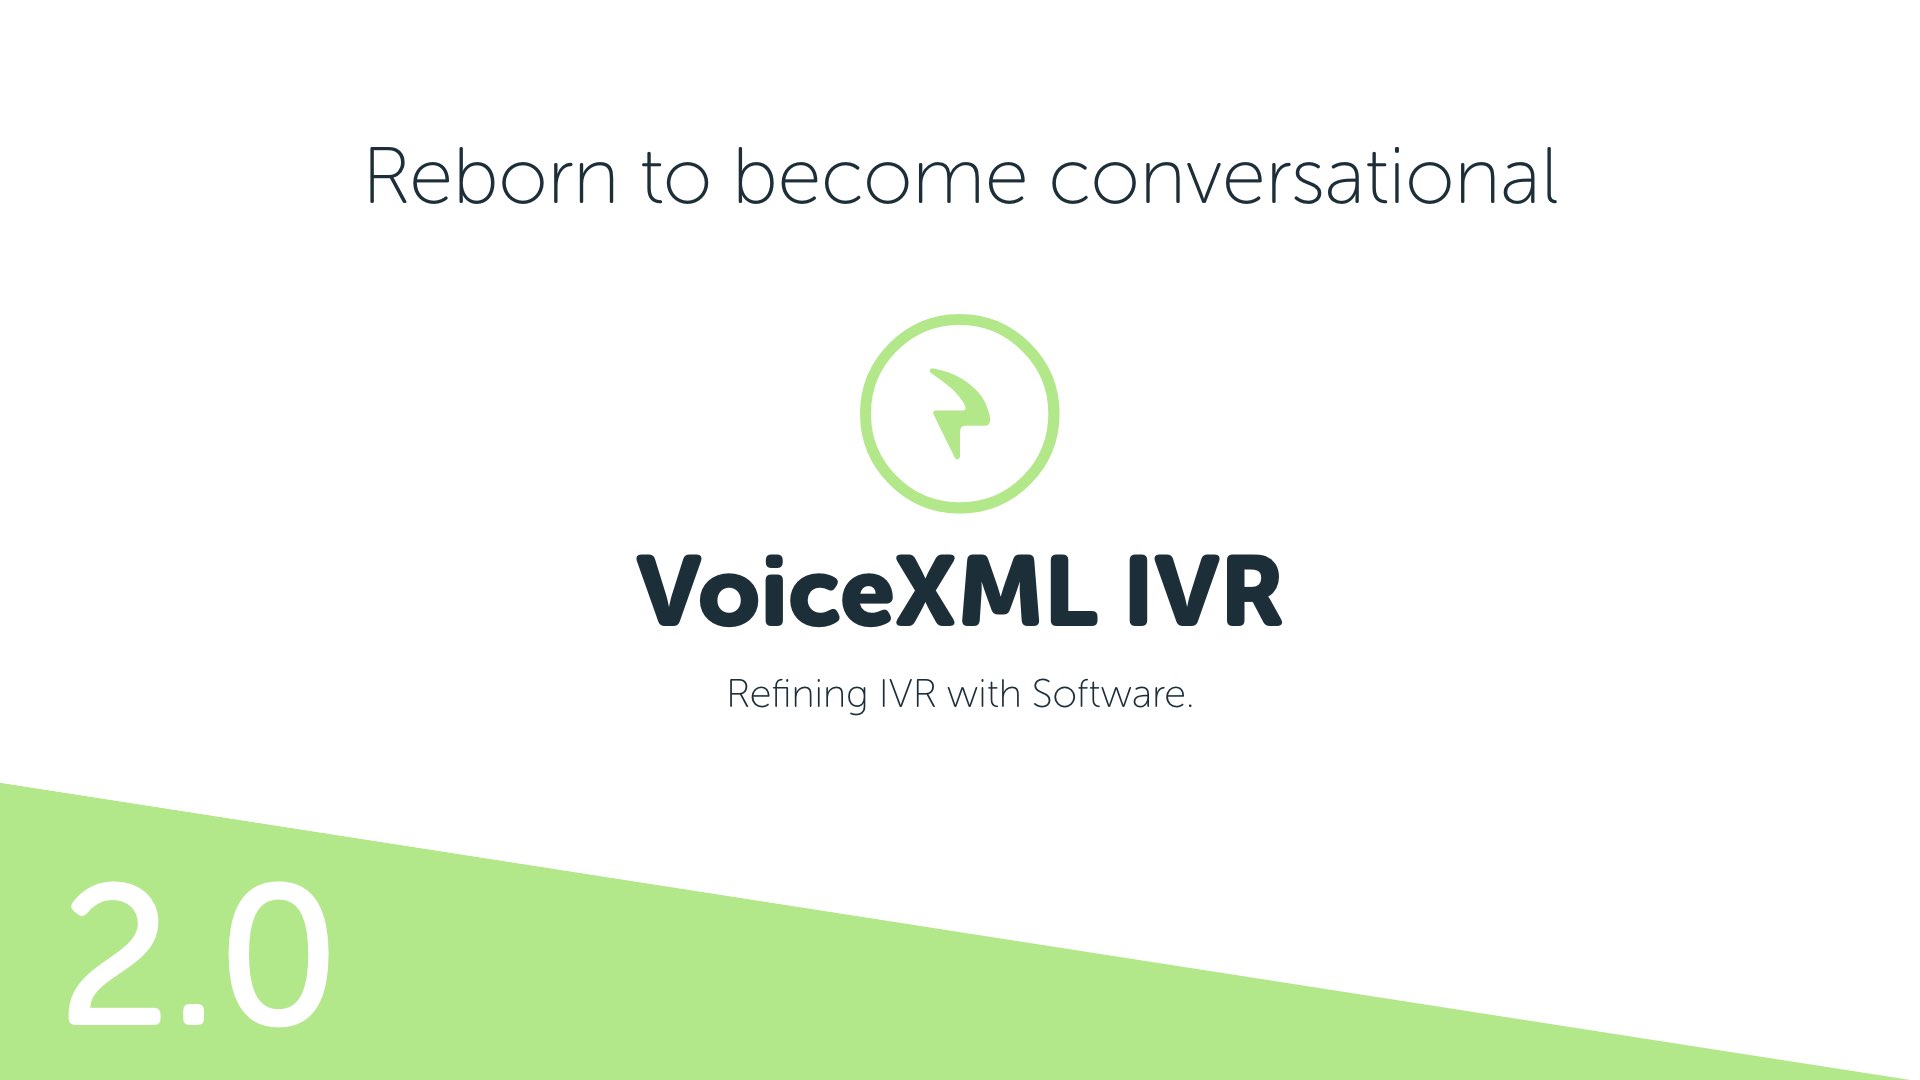 VoiceXML IVR 2.0